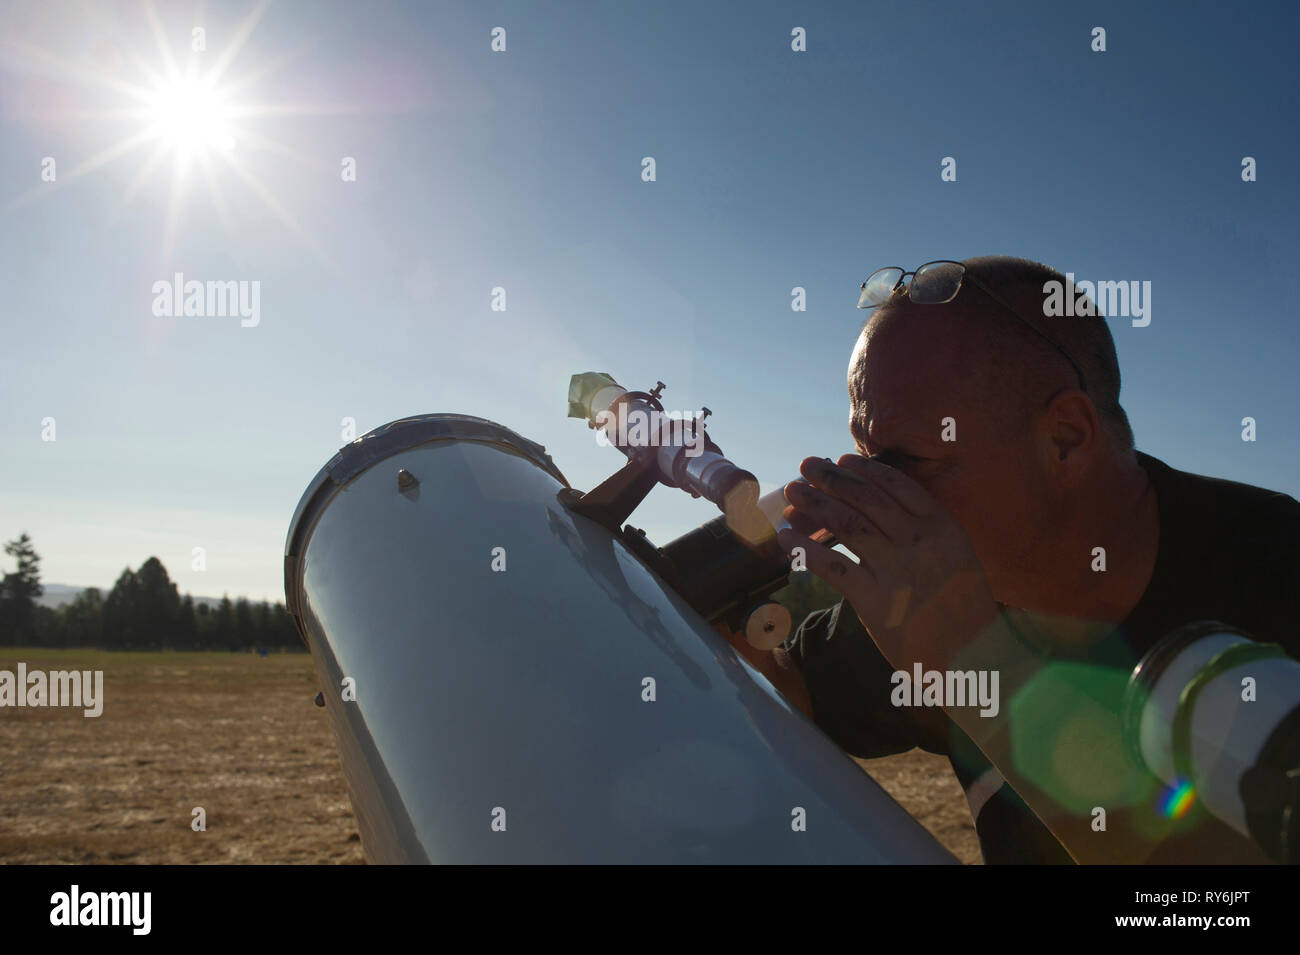 Astronomen auf der Suche helle Sonne durch Teleskop gegen den klaren Himmel während der sonnigen Tag Stockfoto